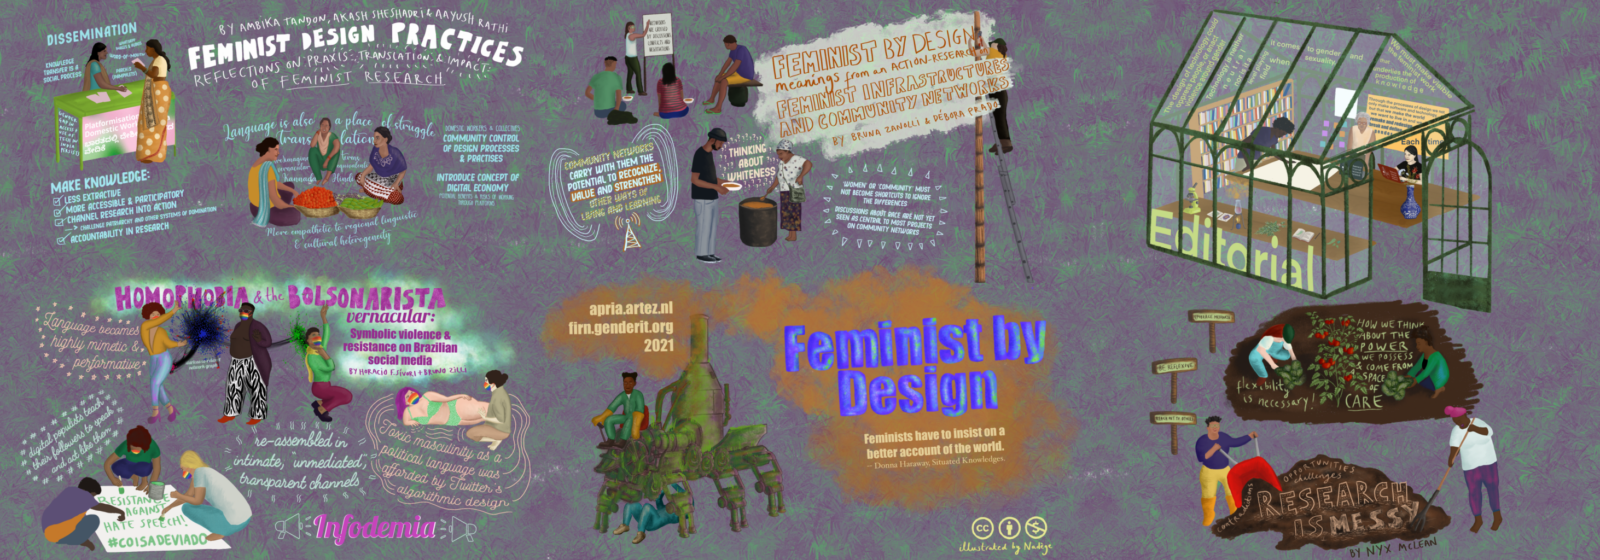 Feminist by Design